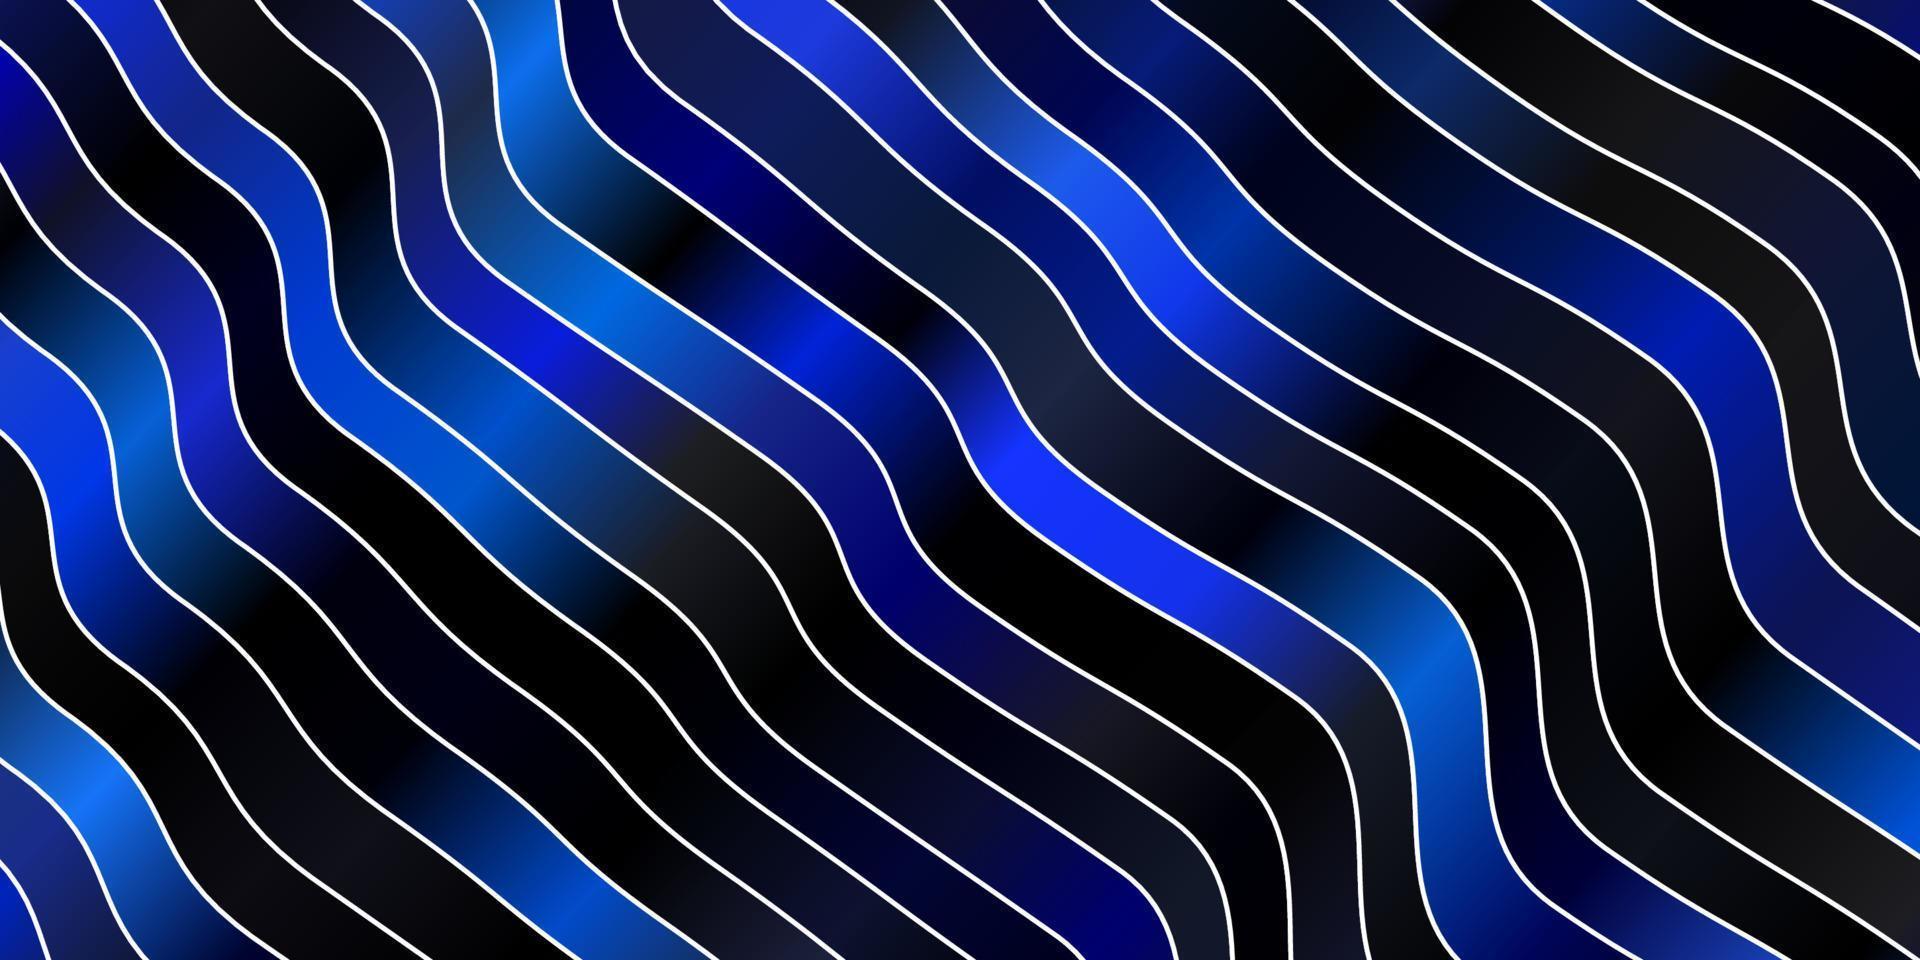 fundo vector azul escuro com linhas curvas.